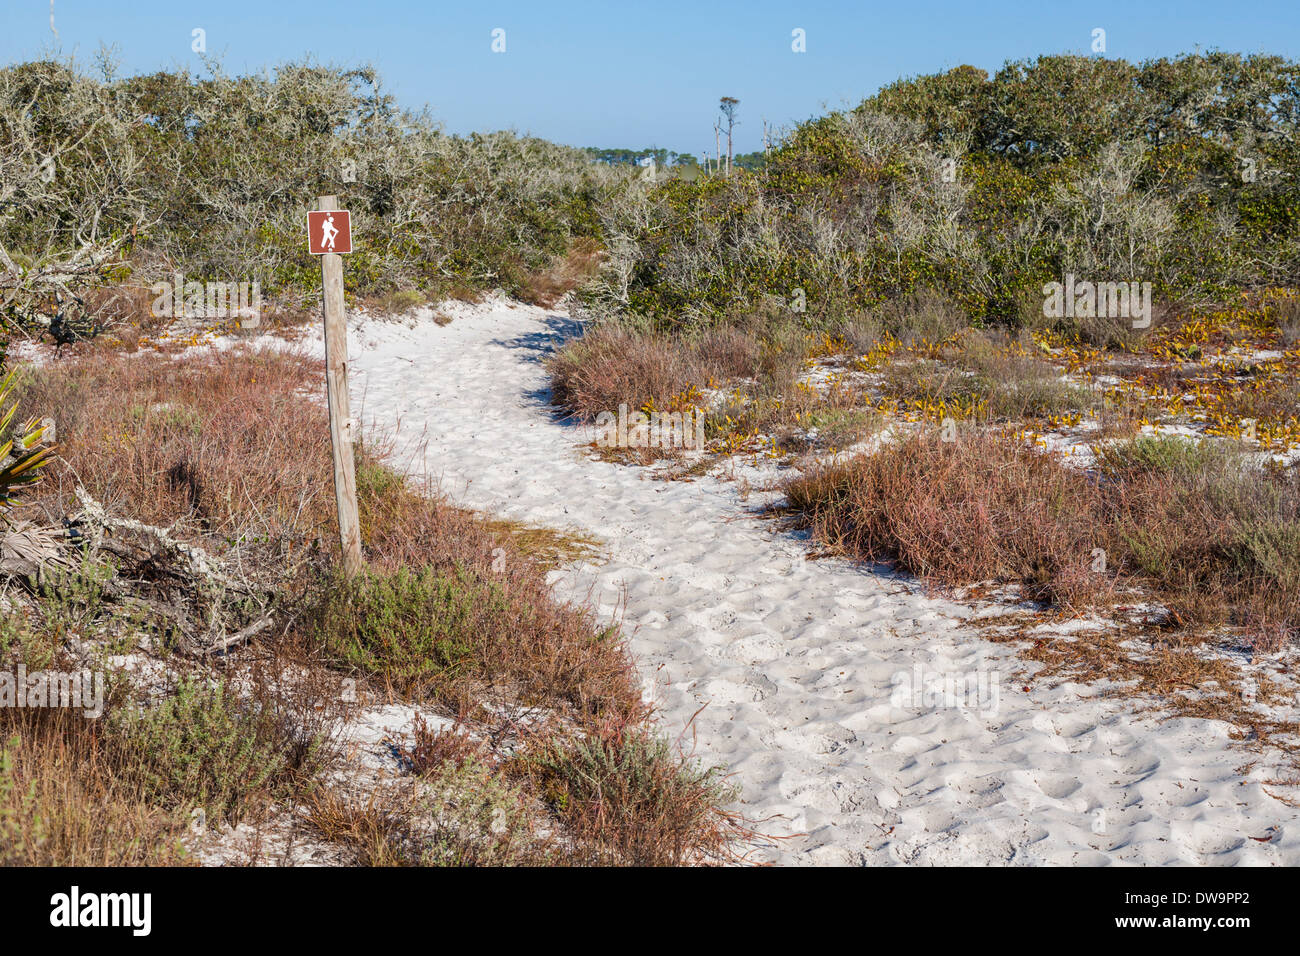 Sentier de randonnée dans la branche de pin Bon Secour National Wildlife Refuge vents entre dunes de sable sur la plage de Gulf Shores, AL Banque D'Images